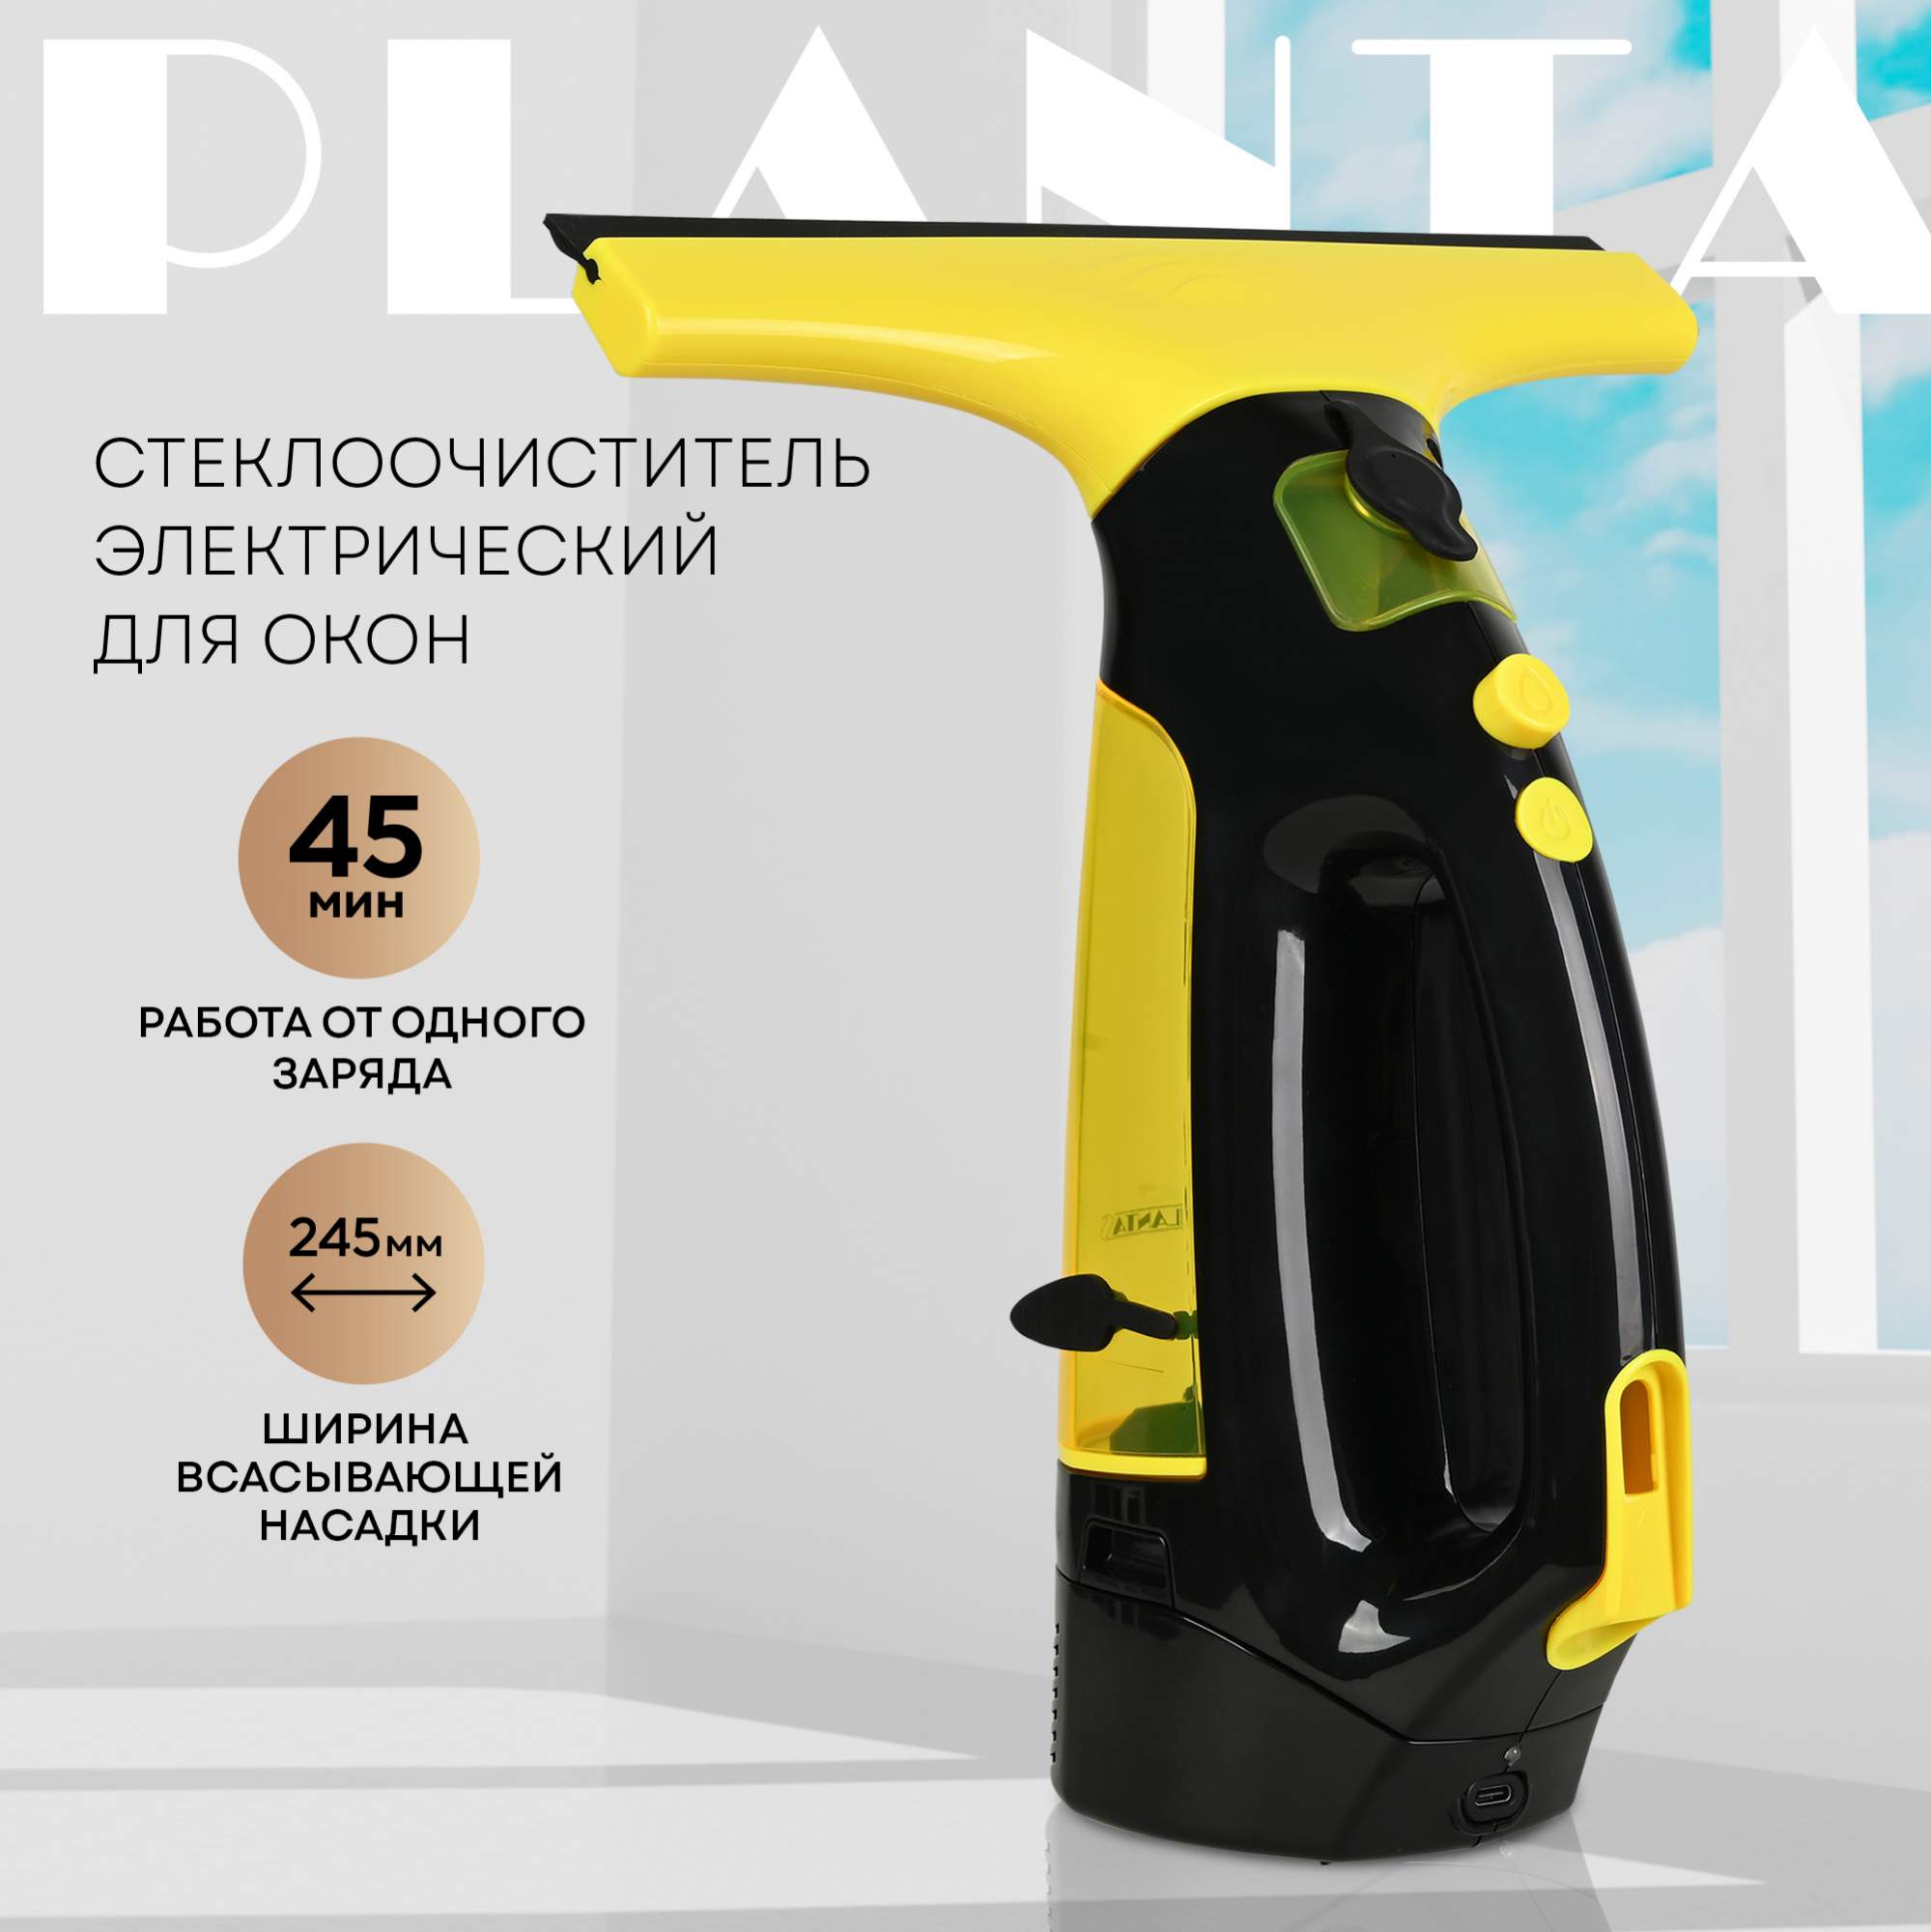 Стеклоочиститель PLANTA PL-HW01 желтый стеклоочиститель karcher wv classic желтый моющее средство для стекол karcher rm 500